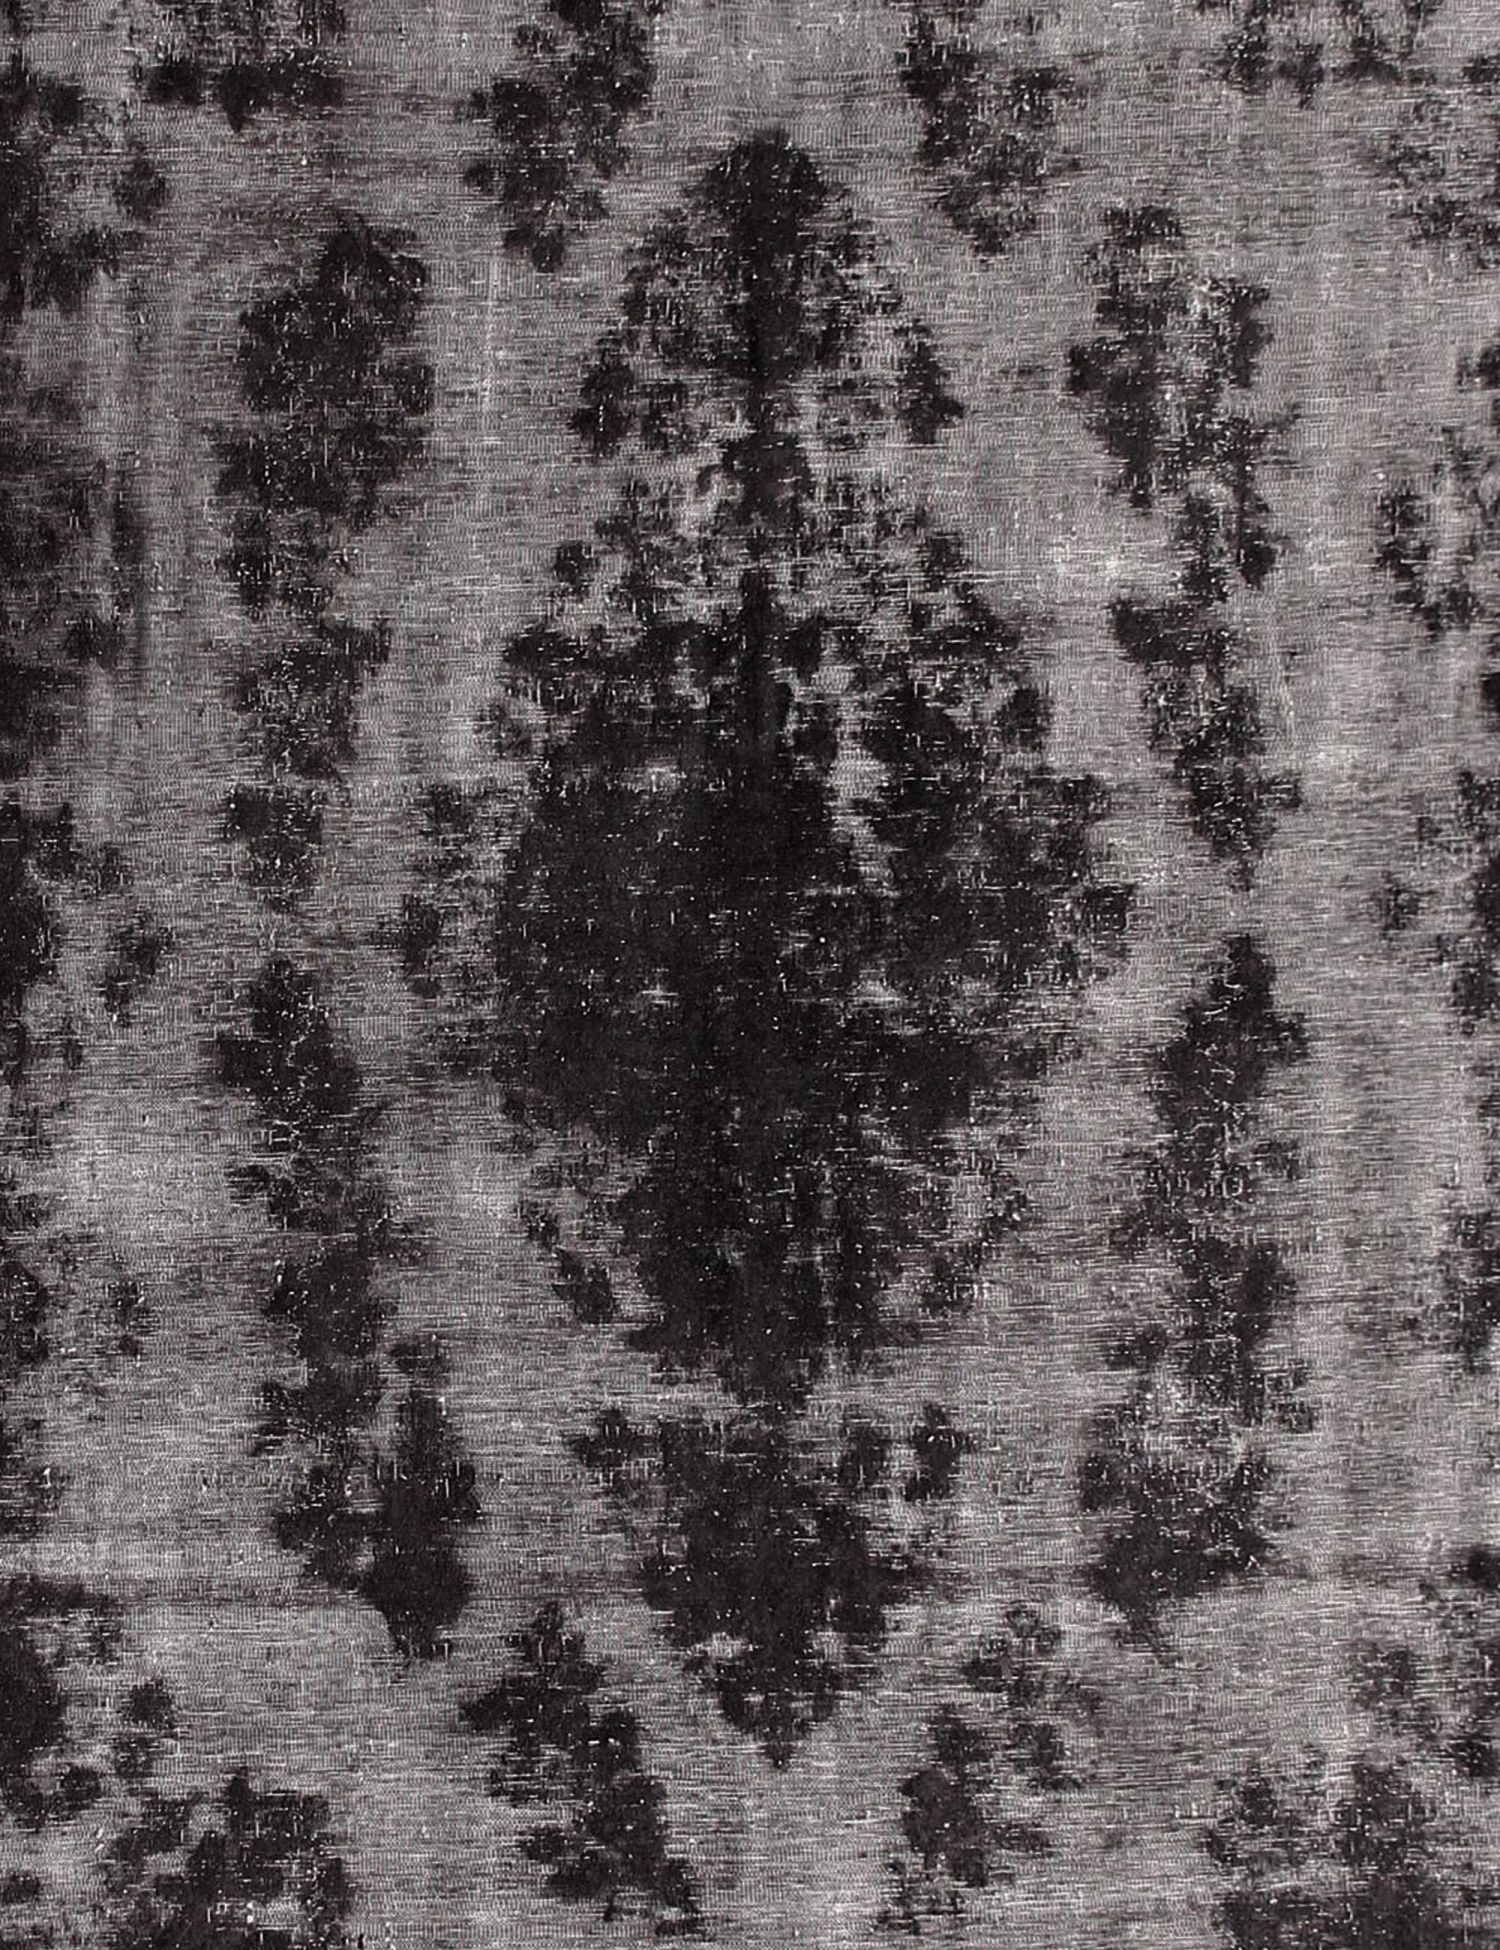 Persian Vintage Carpet  black <br/>371 x 285 cm